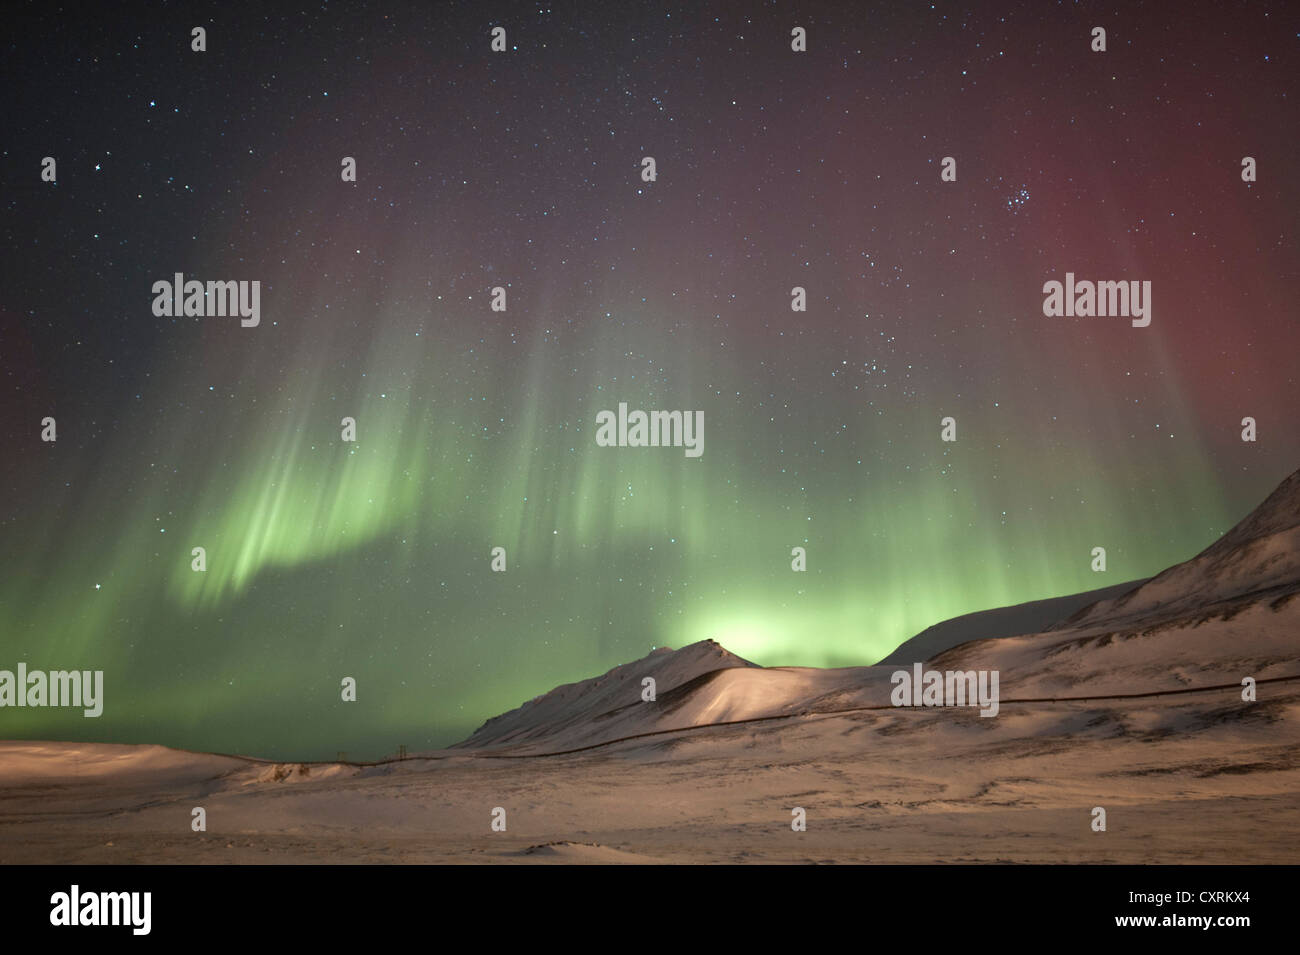 Grünes und rotes Polarlicht, Nordlicht, Aurora Borealis über eine verschneite Landschaft, Landschaft mit beleuchteten Stockfoto